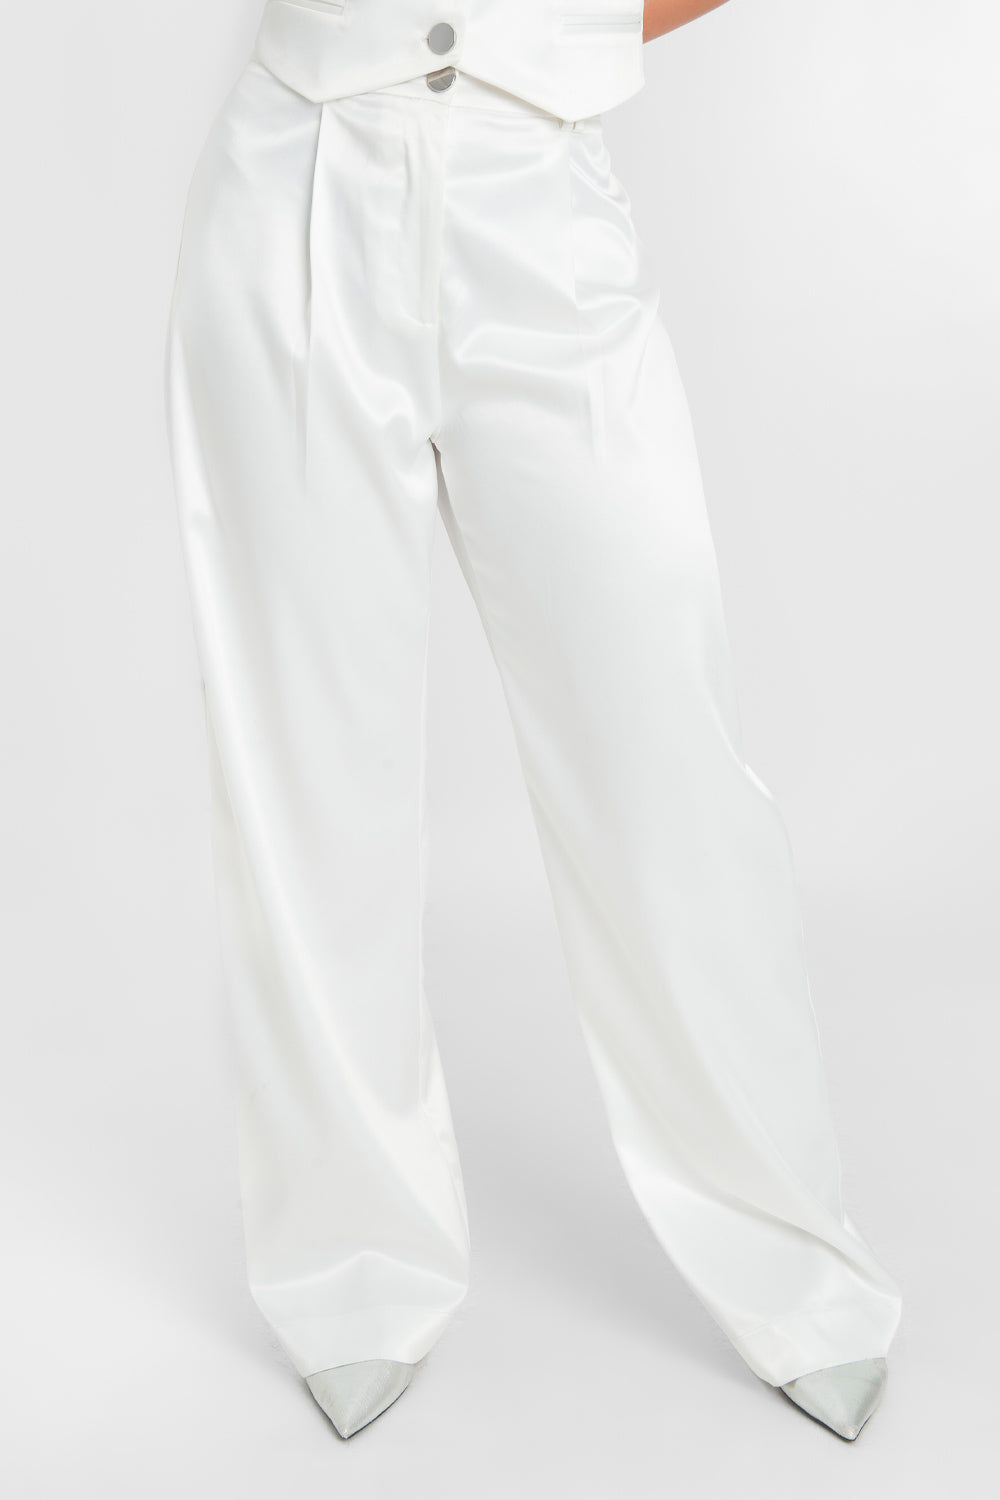 Pantalón satinado de fit wide leg con pinzas frontales, cintura alta con pretina y trabillas, bolsillos delanteros, cierre frontal con botón en contraste y cremallera oculta.